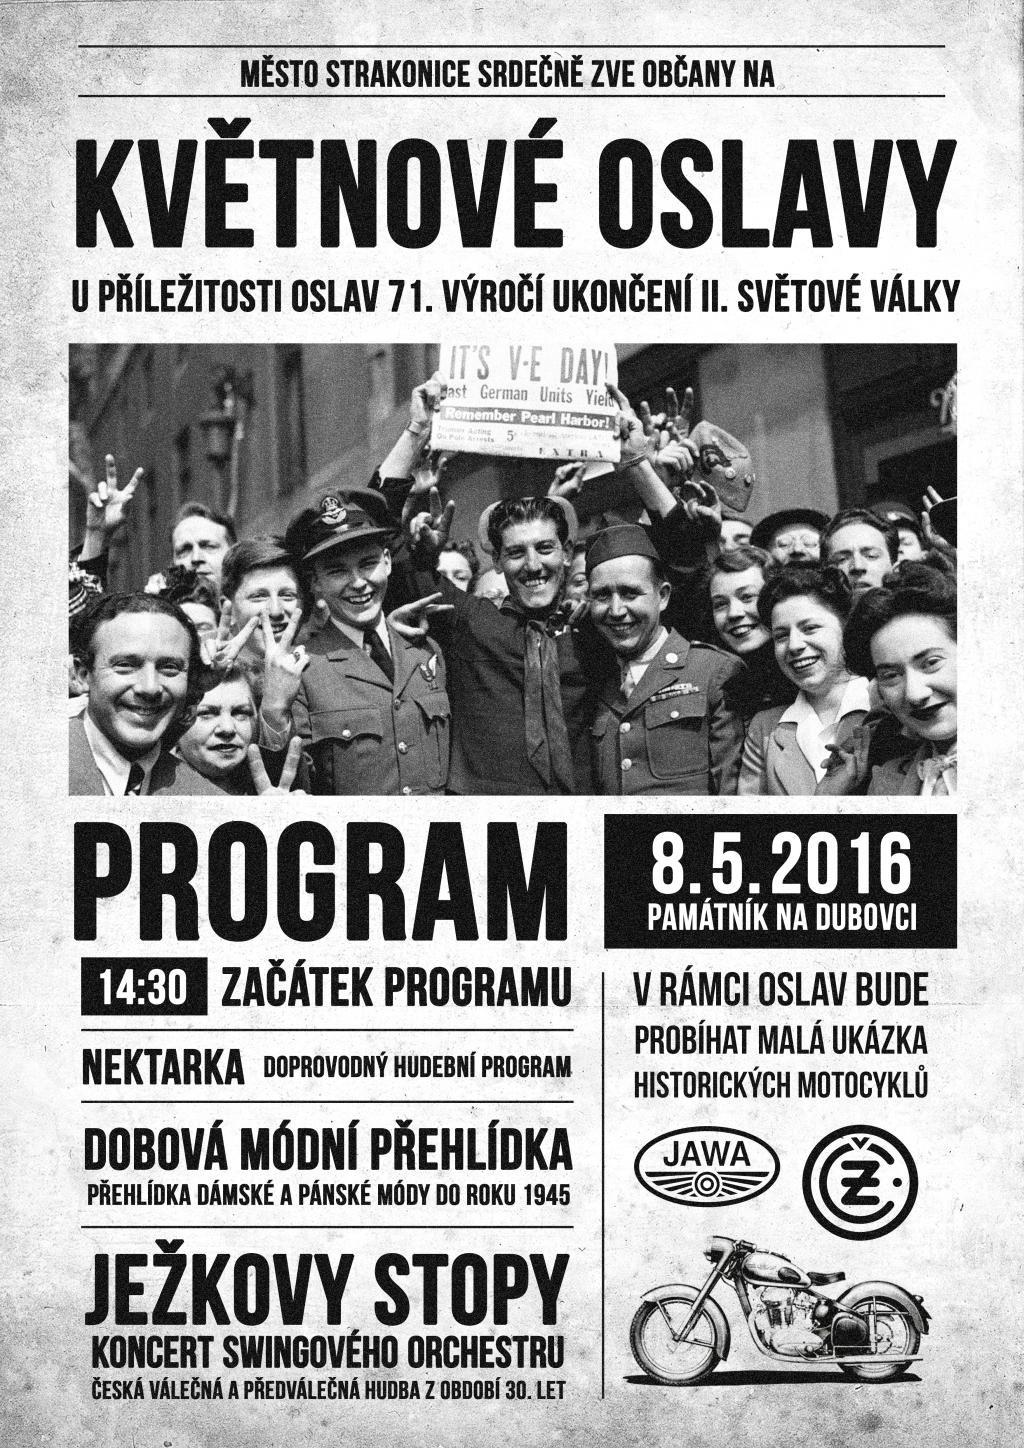 Pietní akt u pomníku Na Dubovci k 71. výročí osvobození od fašismu – oficiální propagační leták na vzpomínkovou akci ve Strakonicích v roce 2016